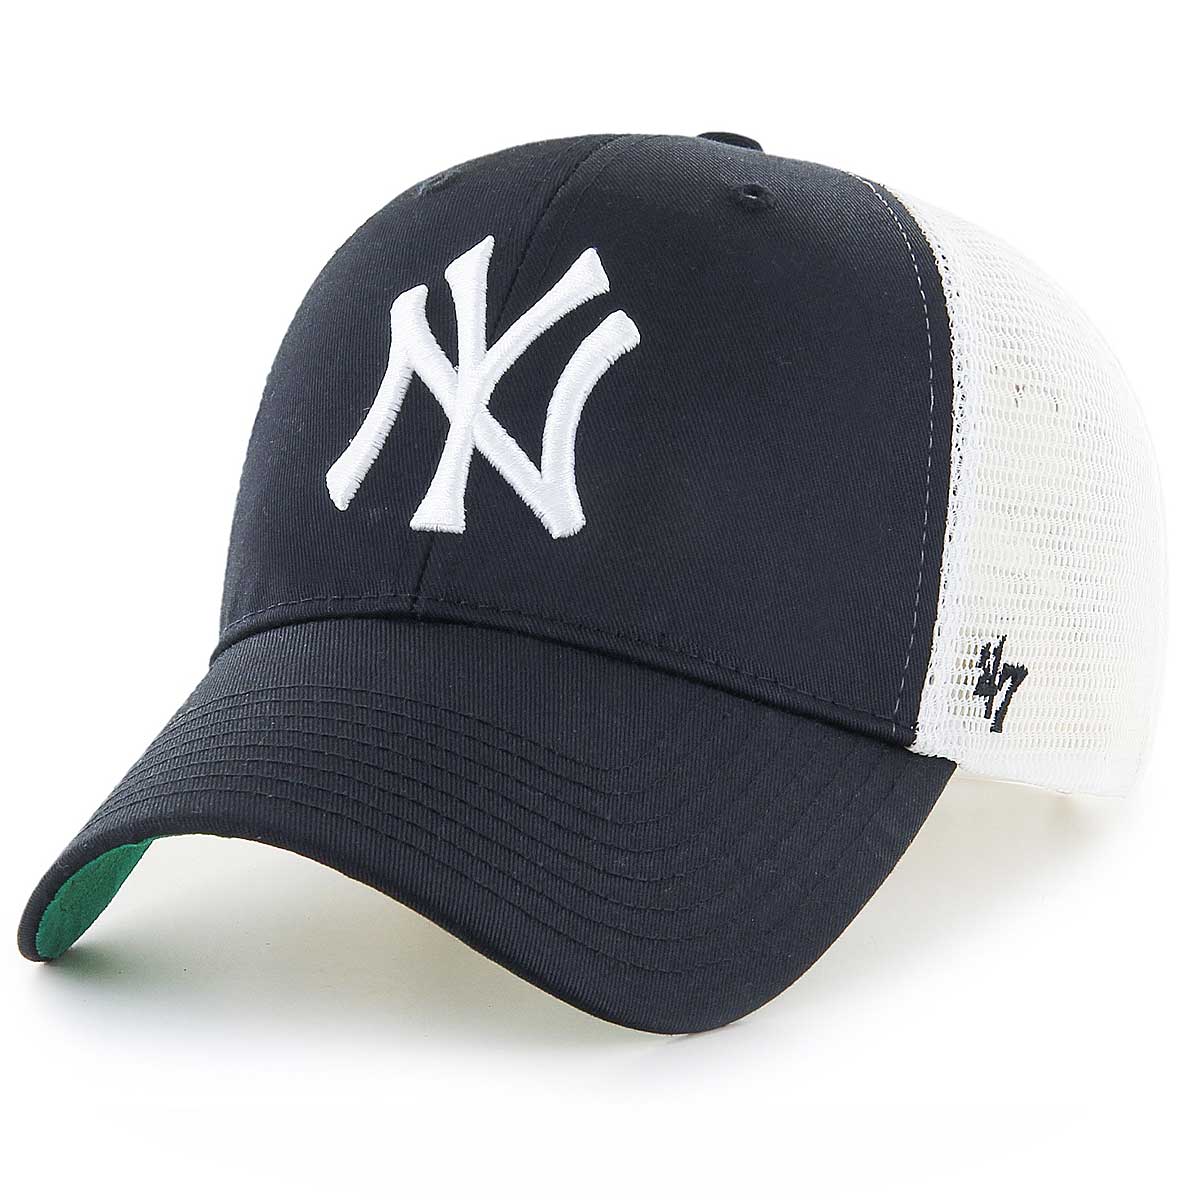 Image of 47 MLB New York Yankees Branson '47 Mvp Cap, Black/yankees